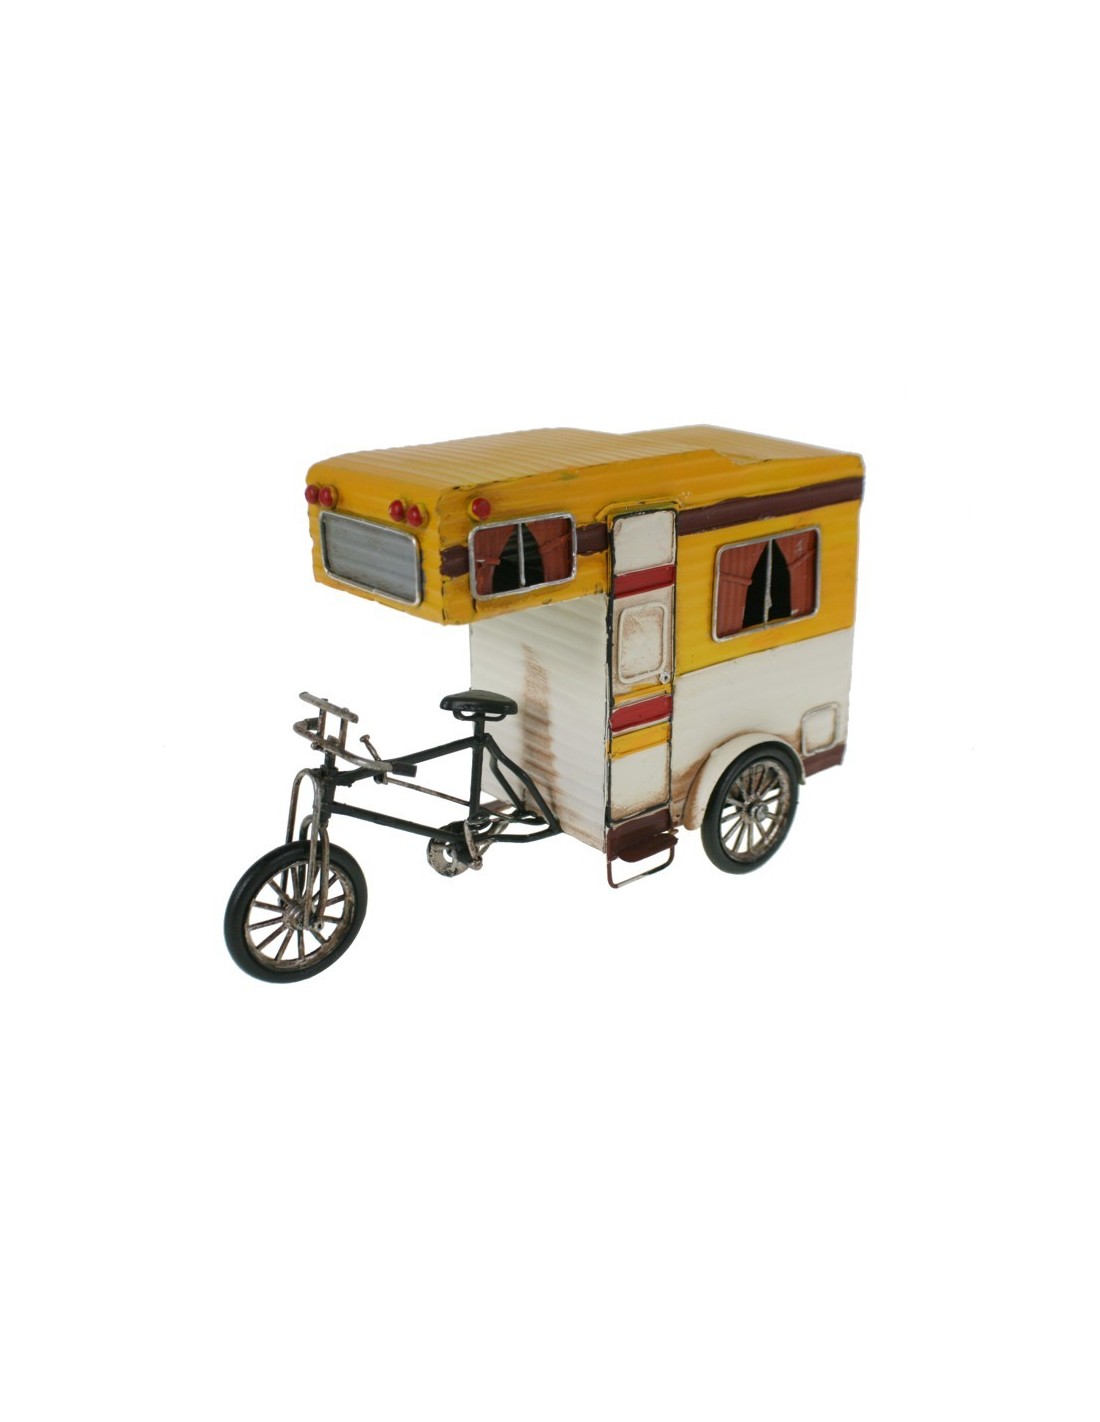 Réplica de moto con caravana estilo vintage de color amarillo